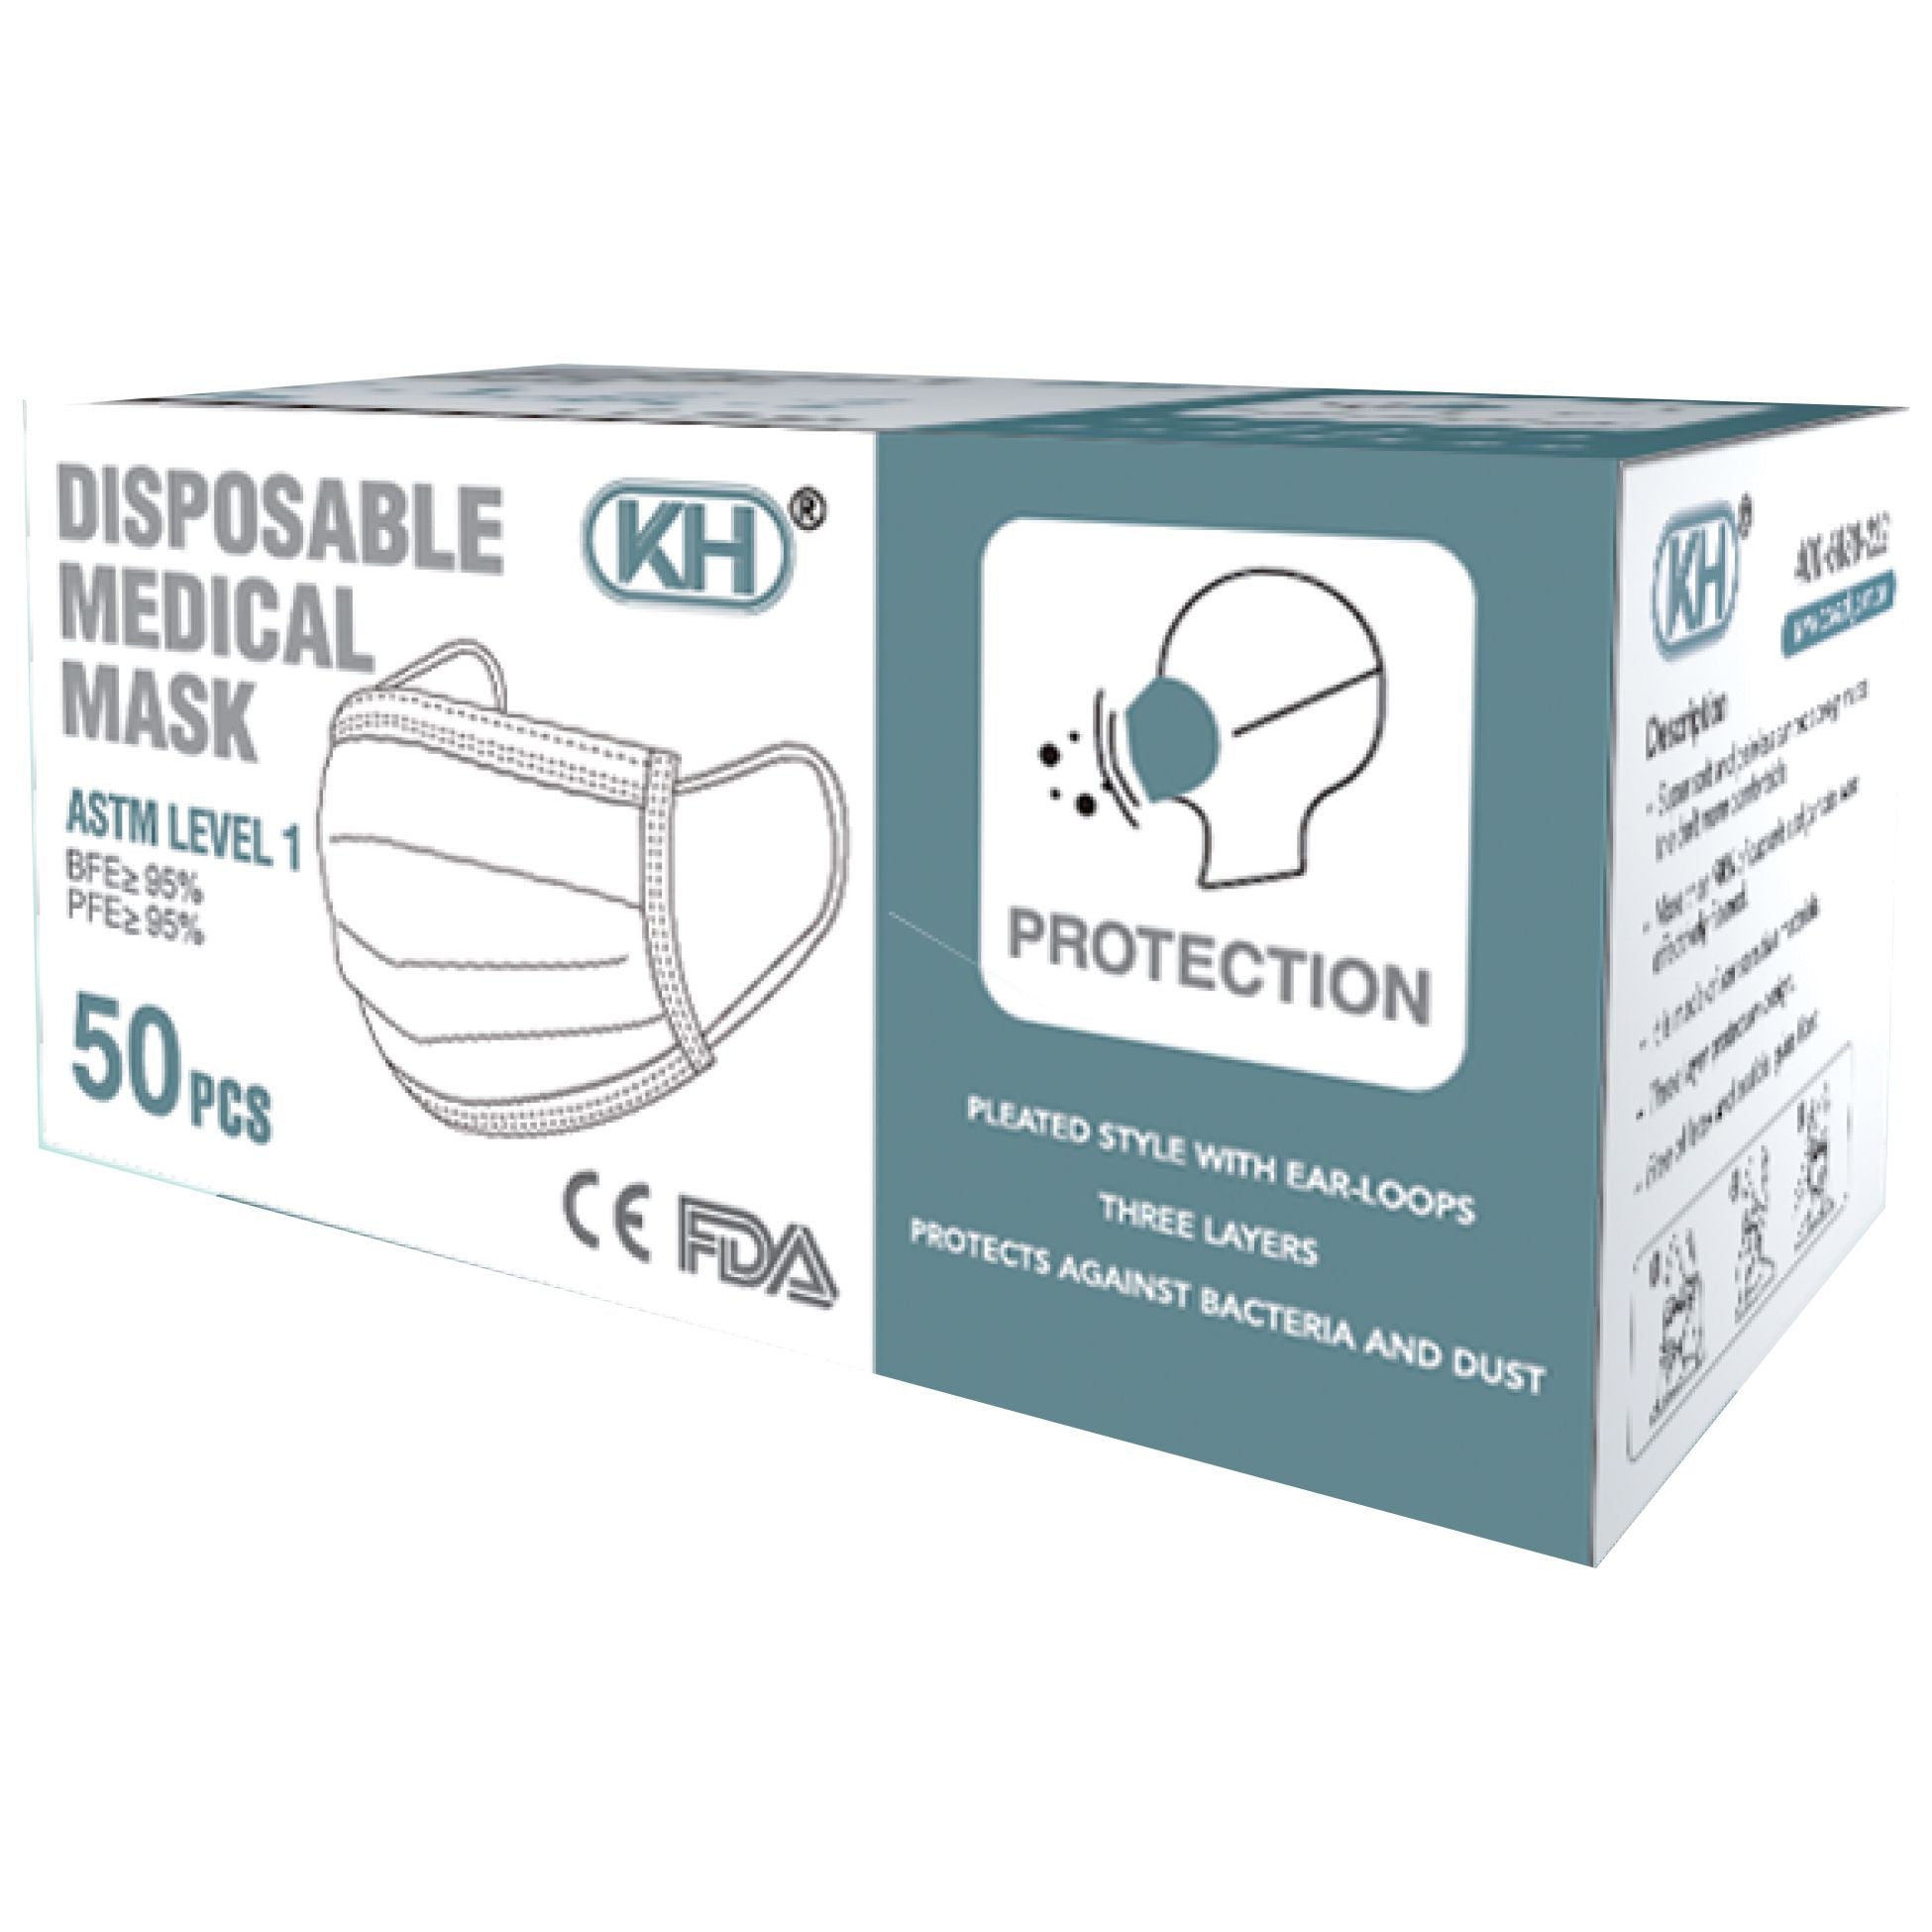 KH Disposable Medical Masks - 50 Pcs ASTM Level 1